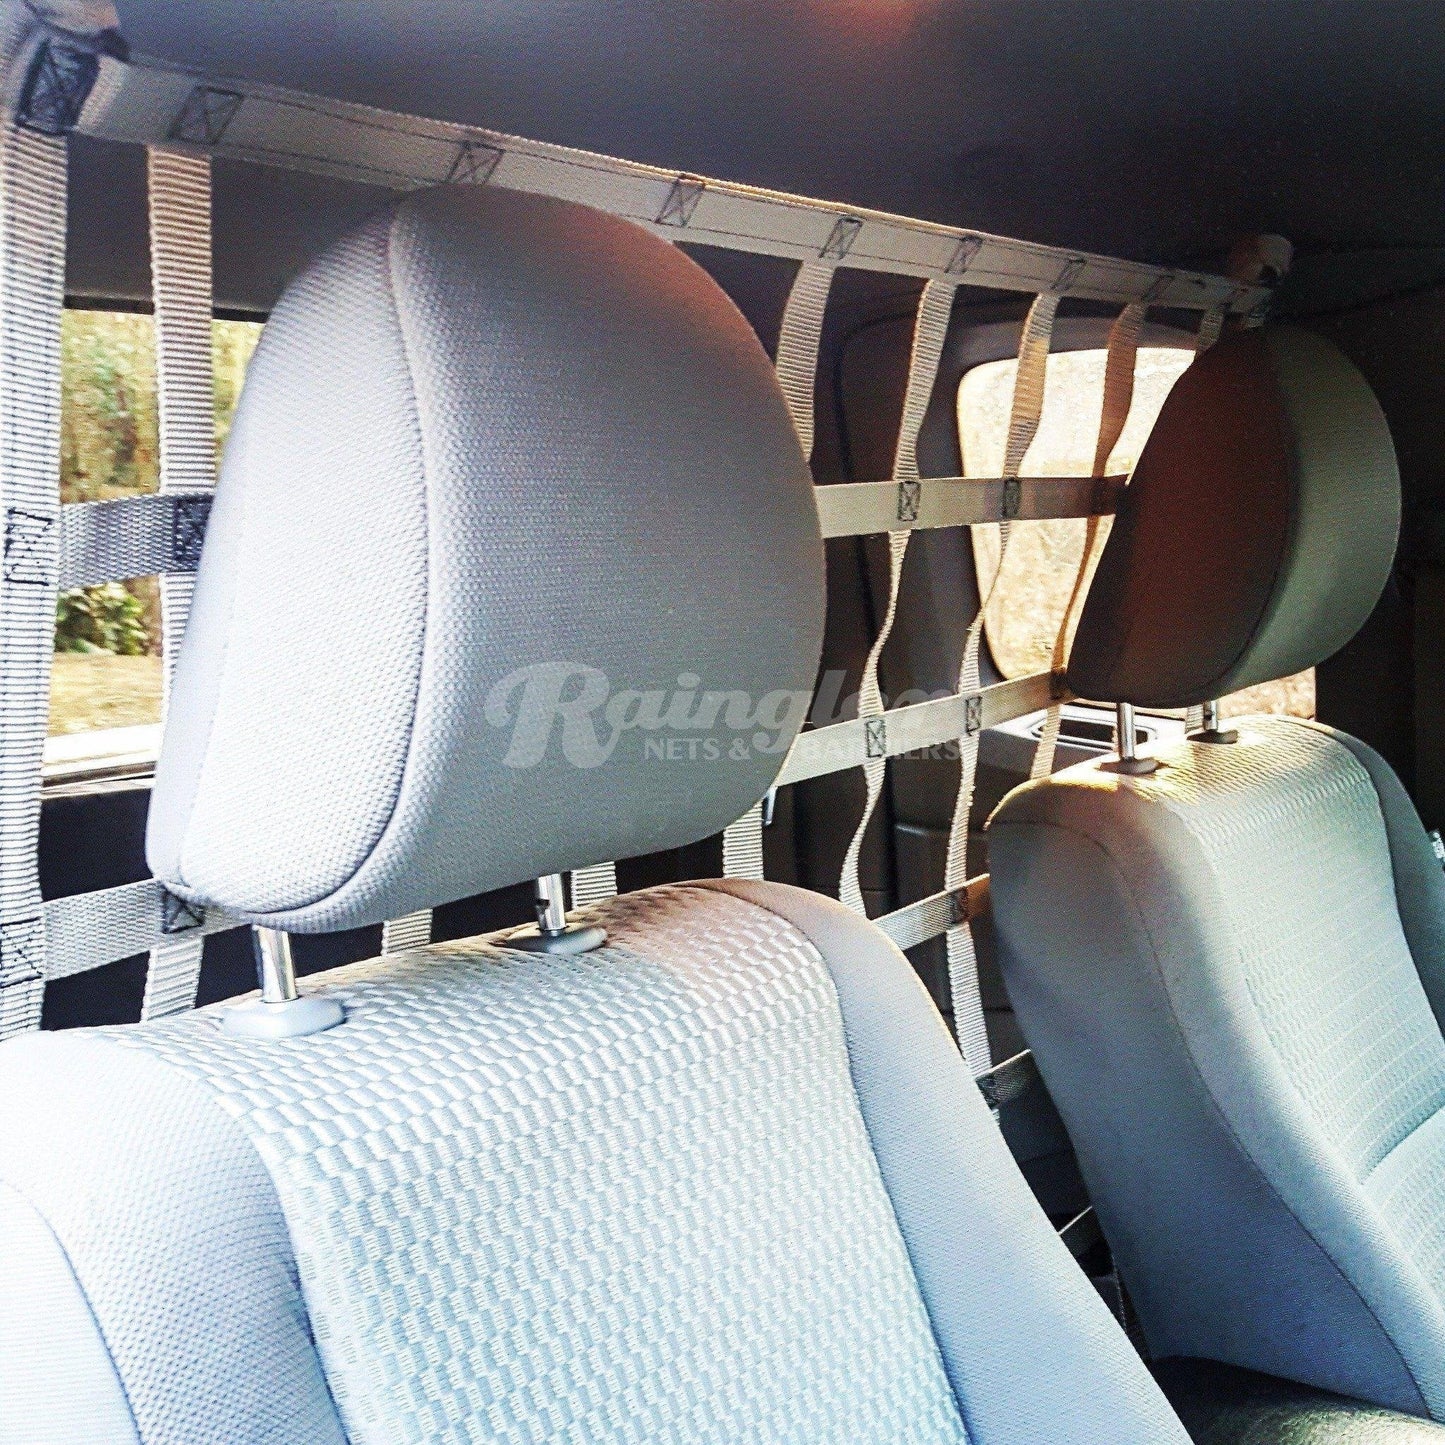 1999 - 2015 Nissan Xterra Behind Front Seats Barrier Divider Net